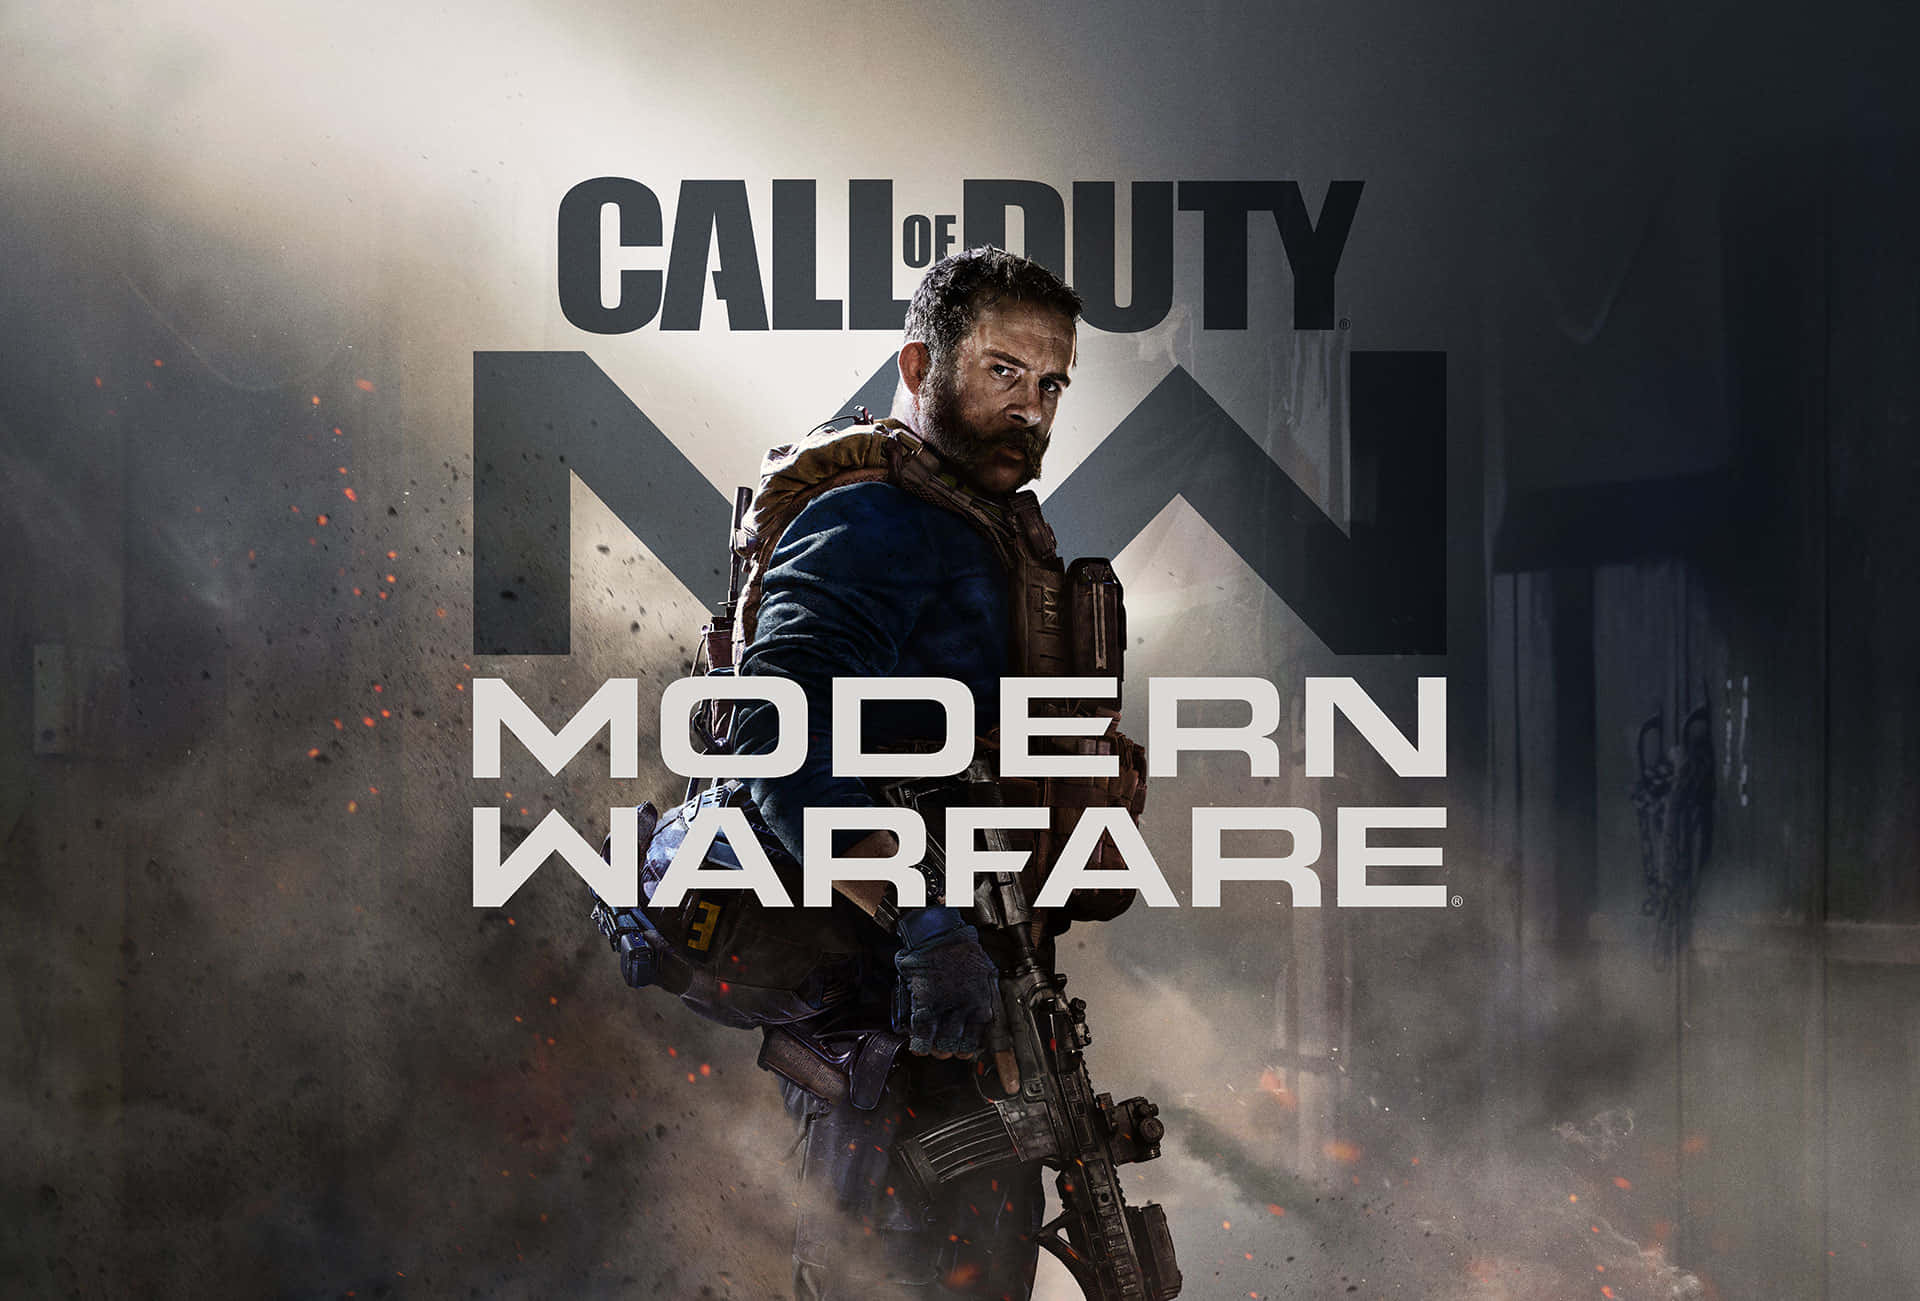 Preparatialla Battaglia Imminente Con Call Of Duty: Modern Warfare